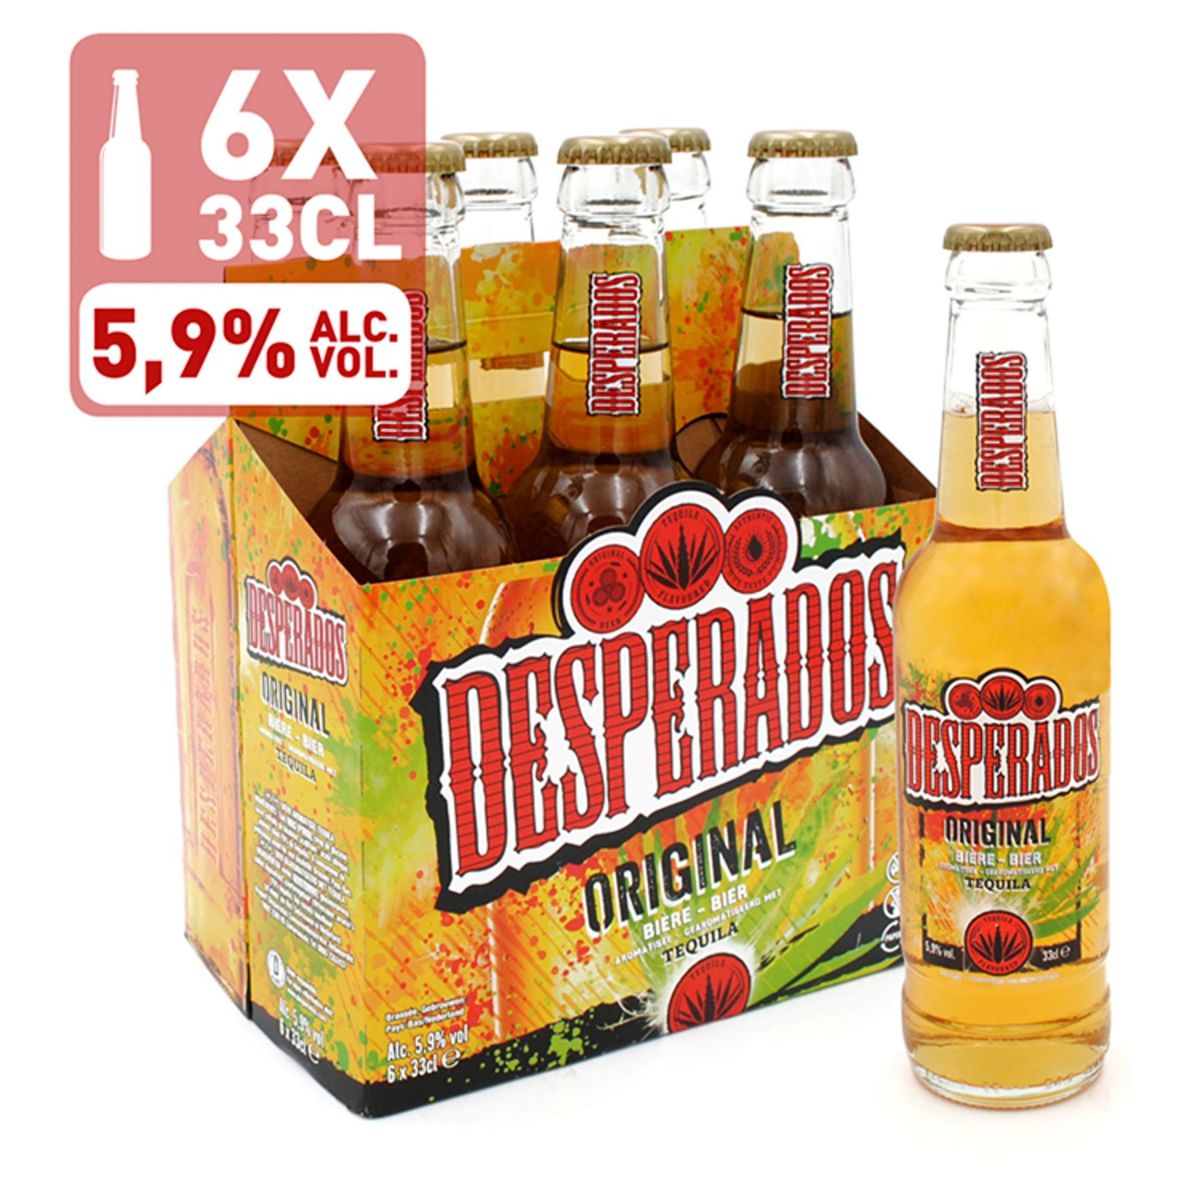 Desperados Bière Tequila 5.9% ALC Bouteille 6x33cl